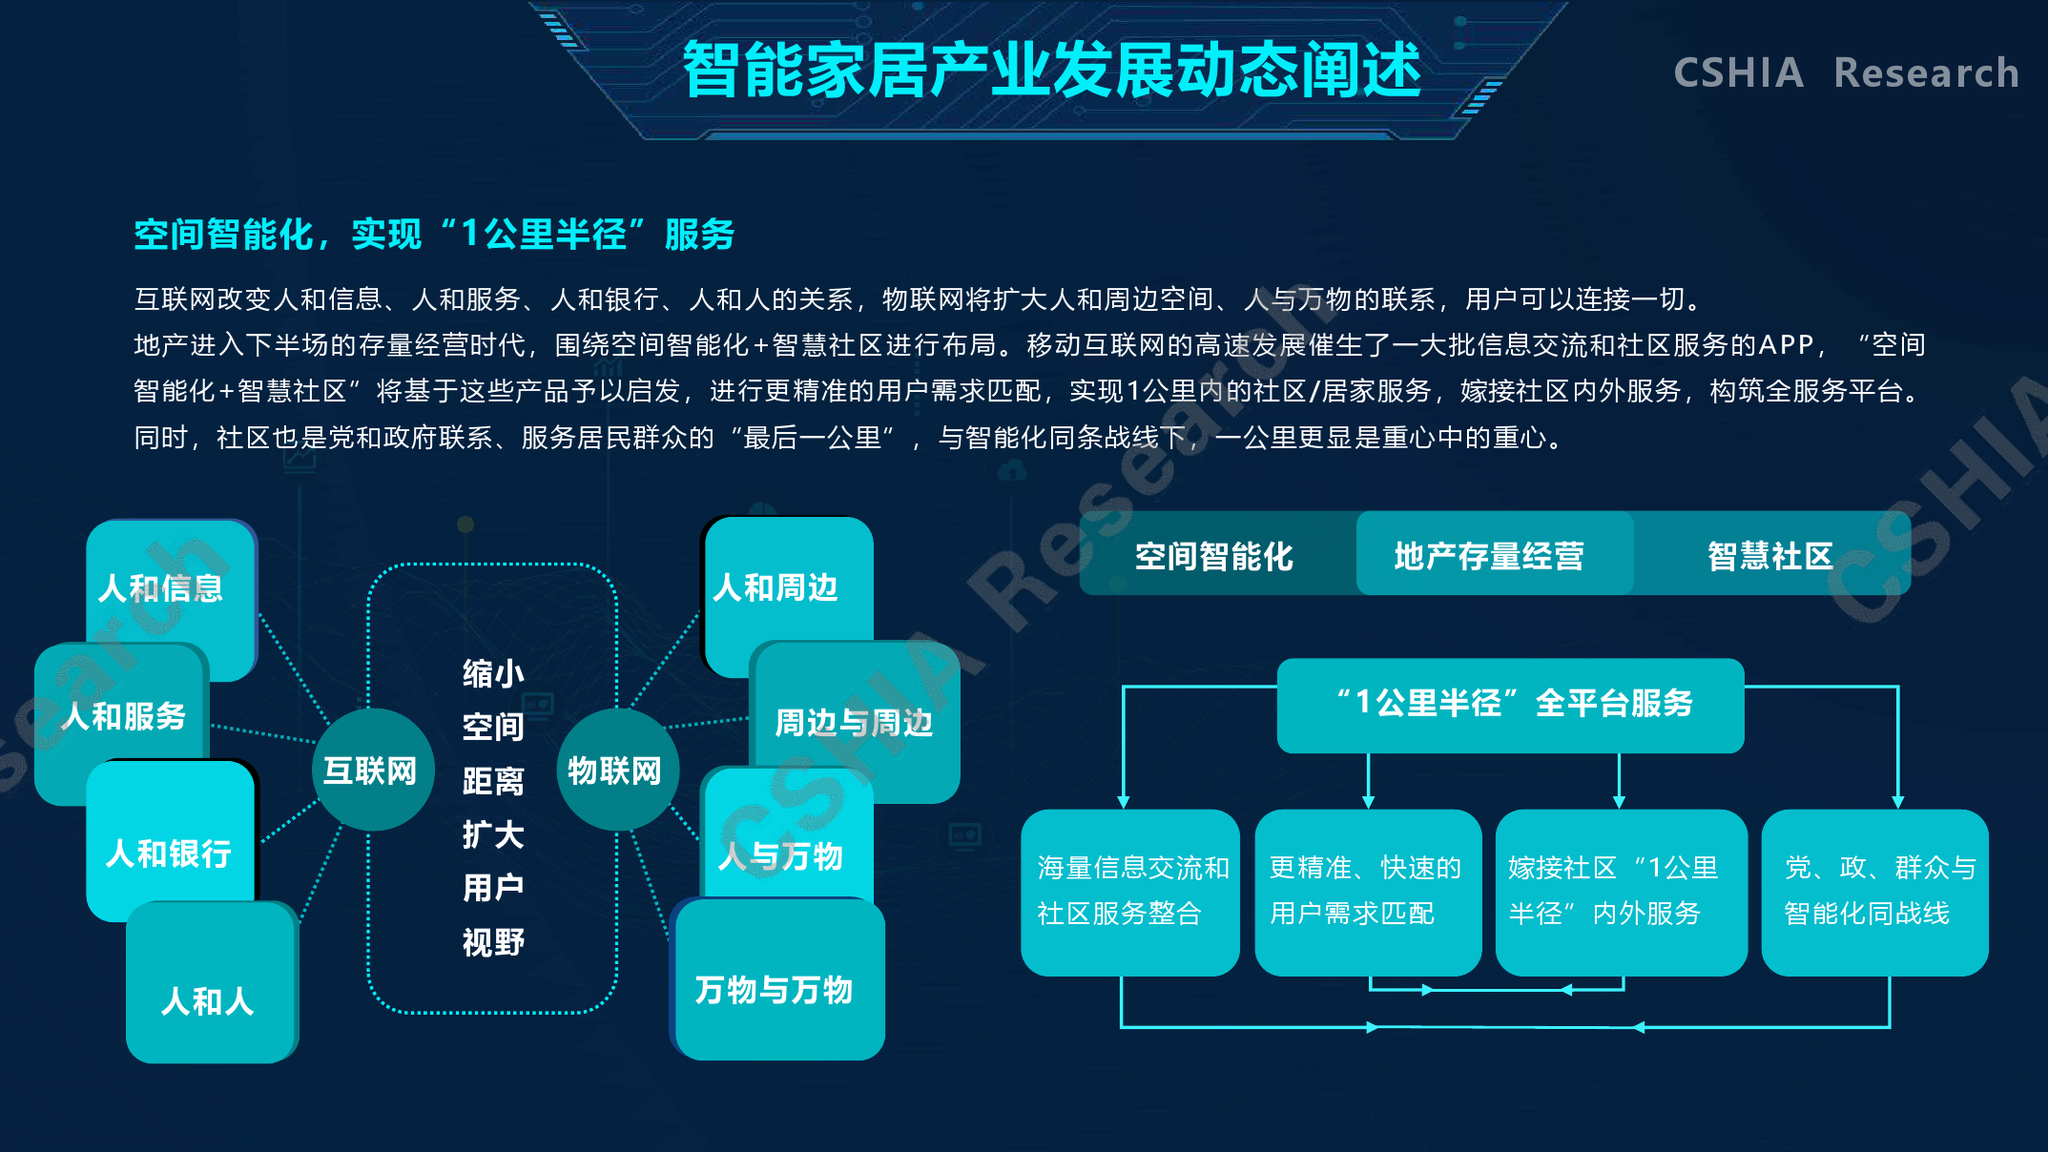 集成服务商及终端用户,编制并发布《2020中国智能家居生态发展白皮书